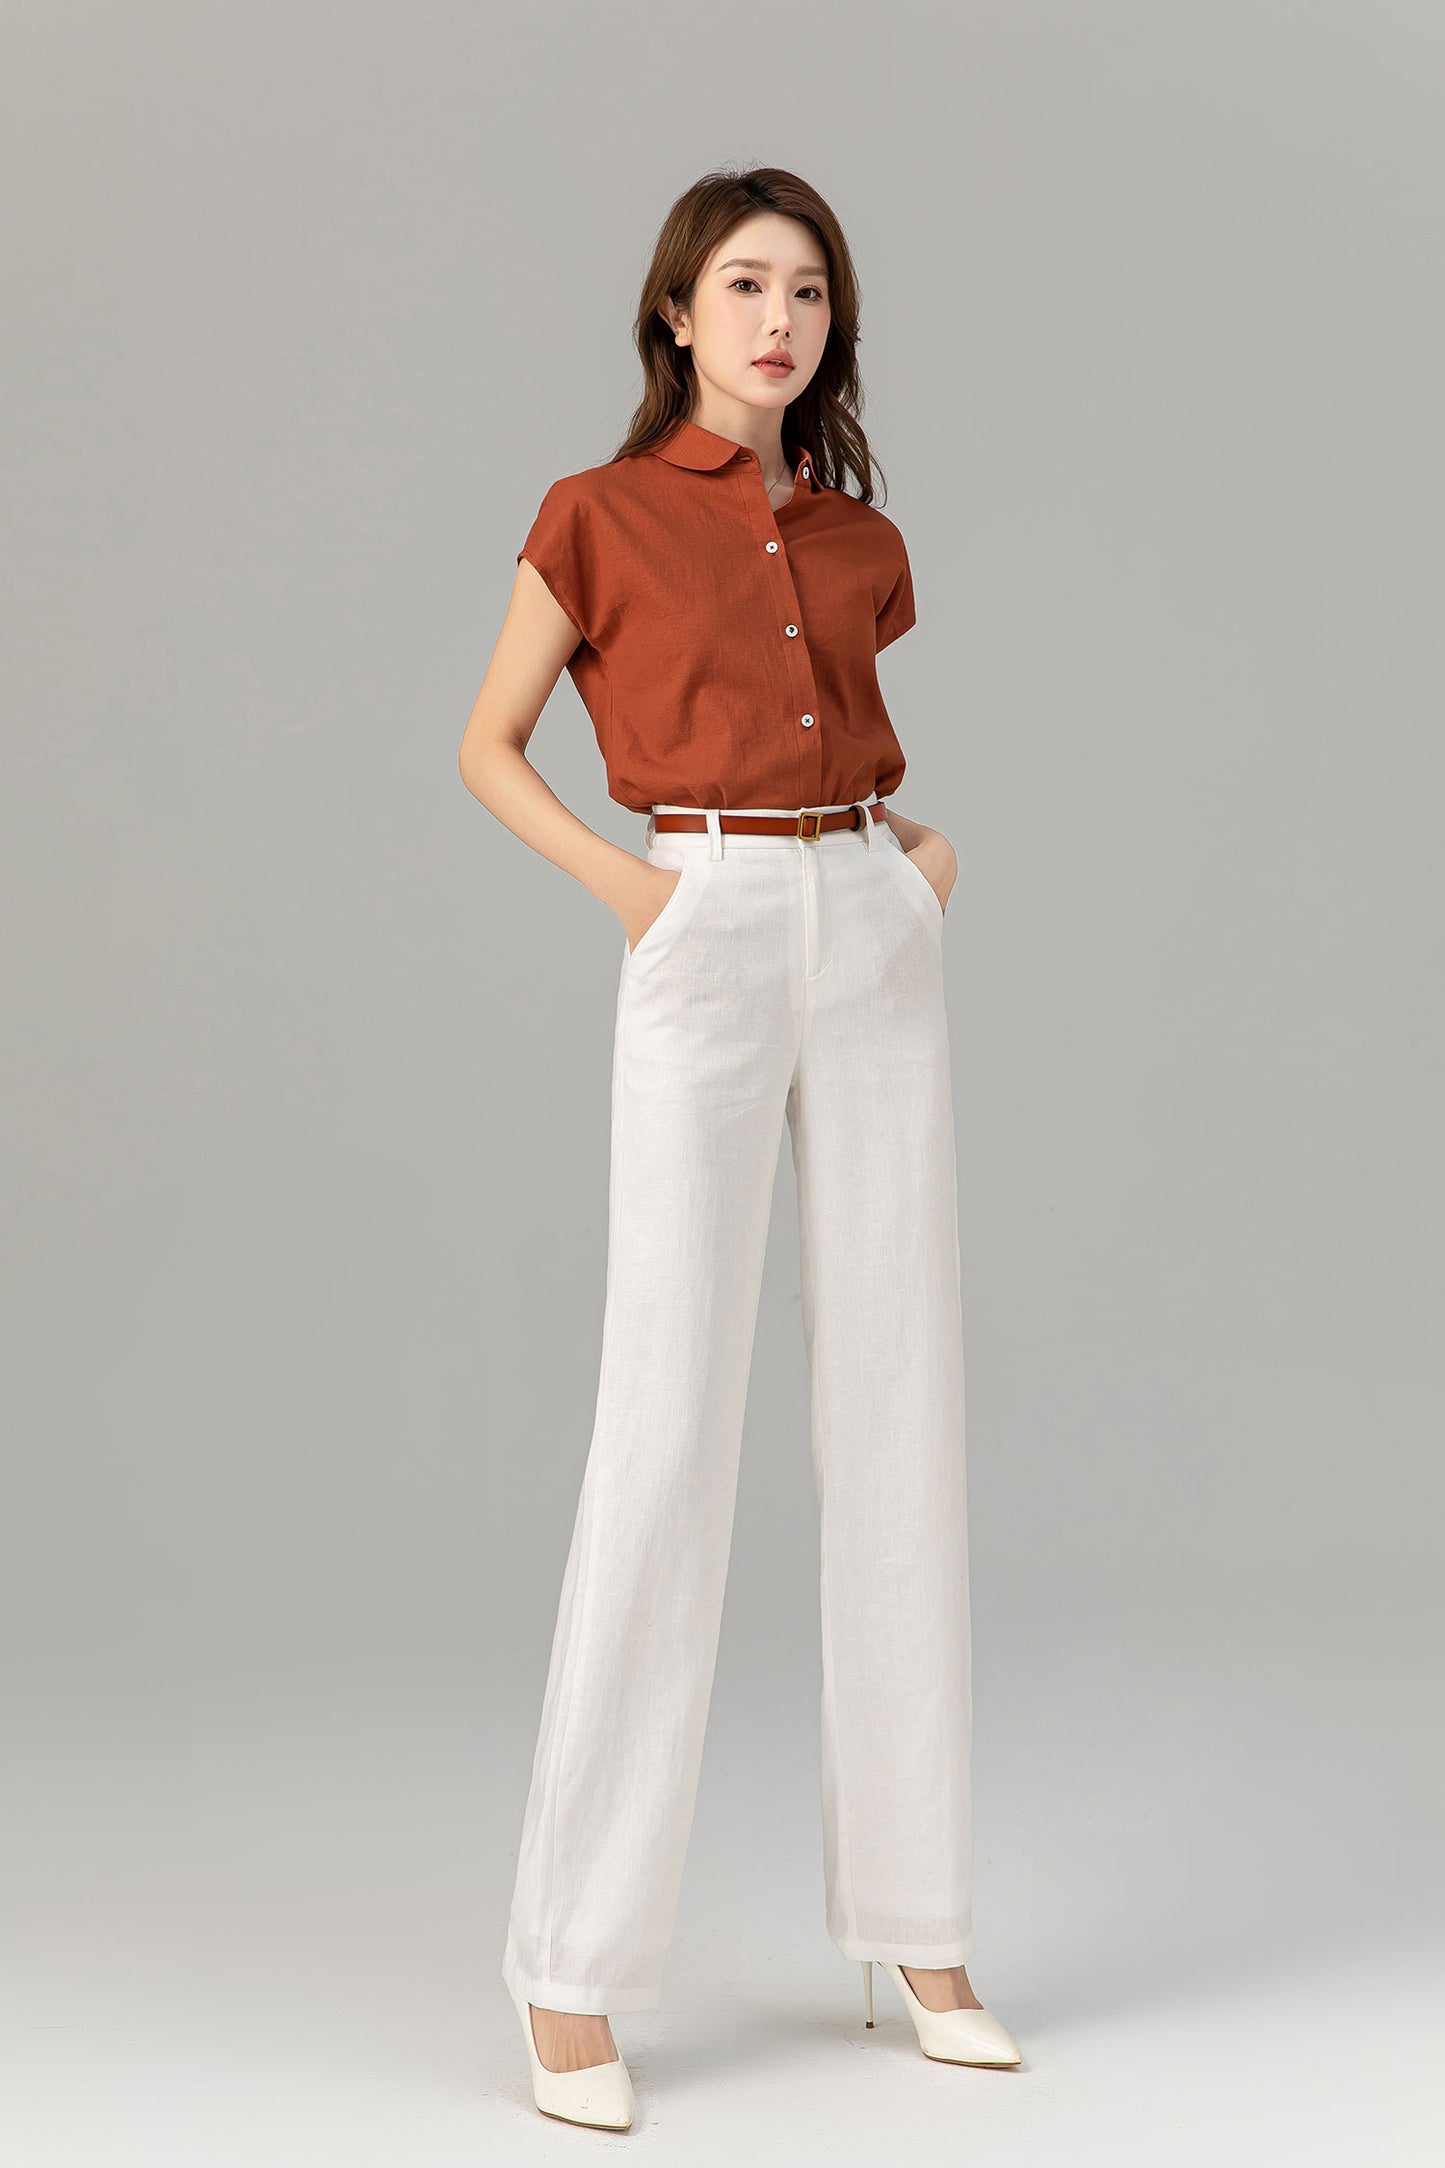 Short sleeves summer linen shirt top women 4916